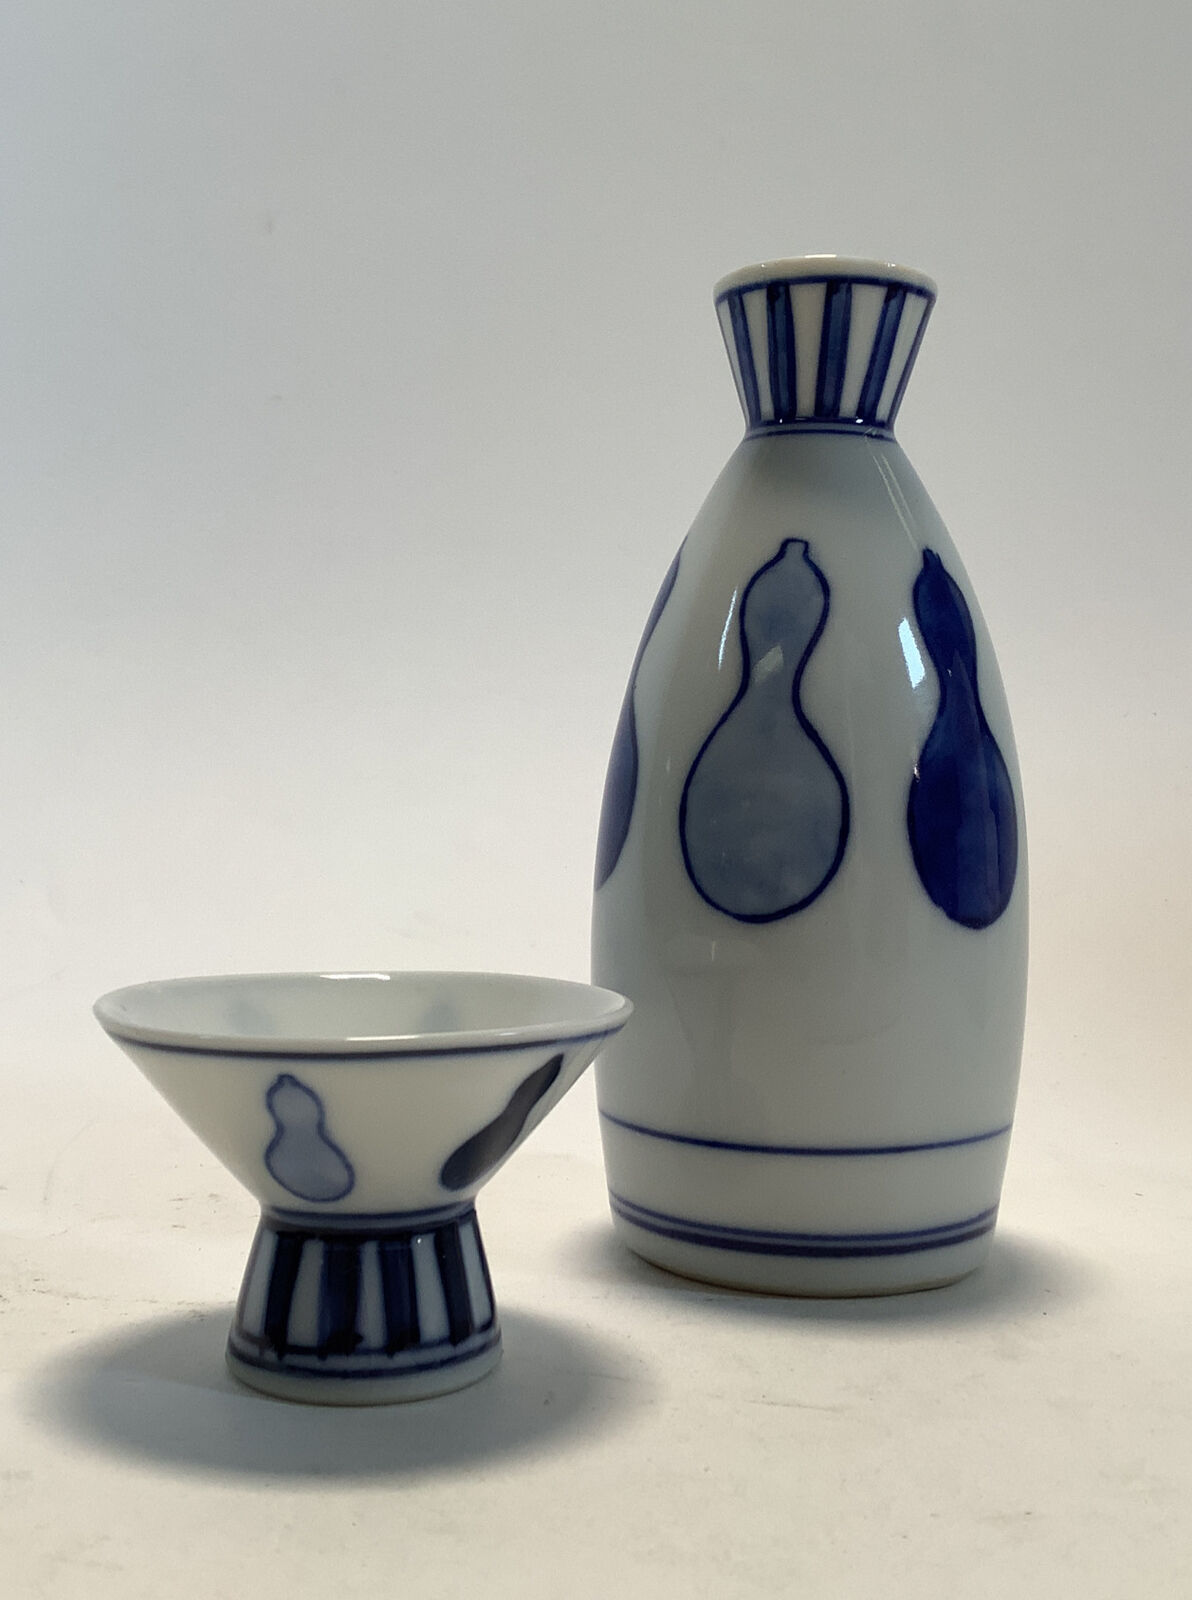 5" Sake Carafe And Sake Cup Blue And White Design Pattern